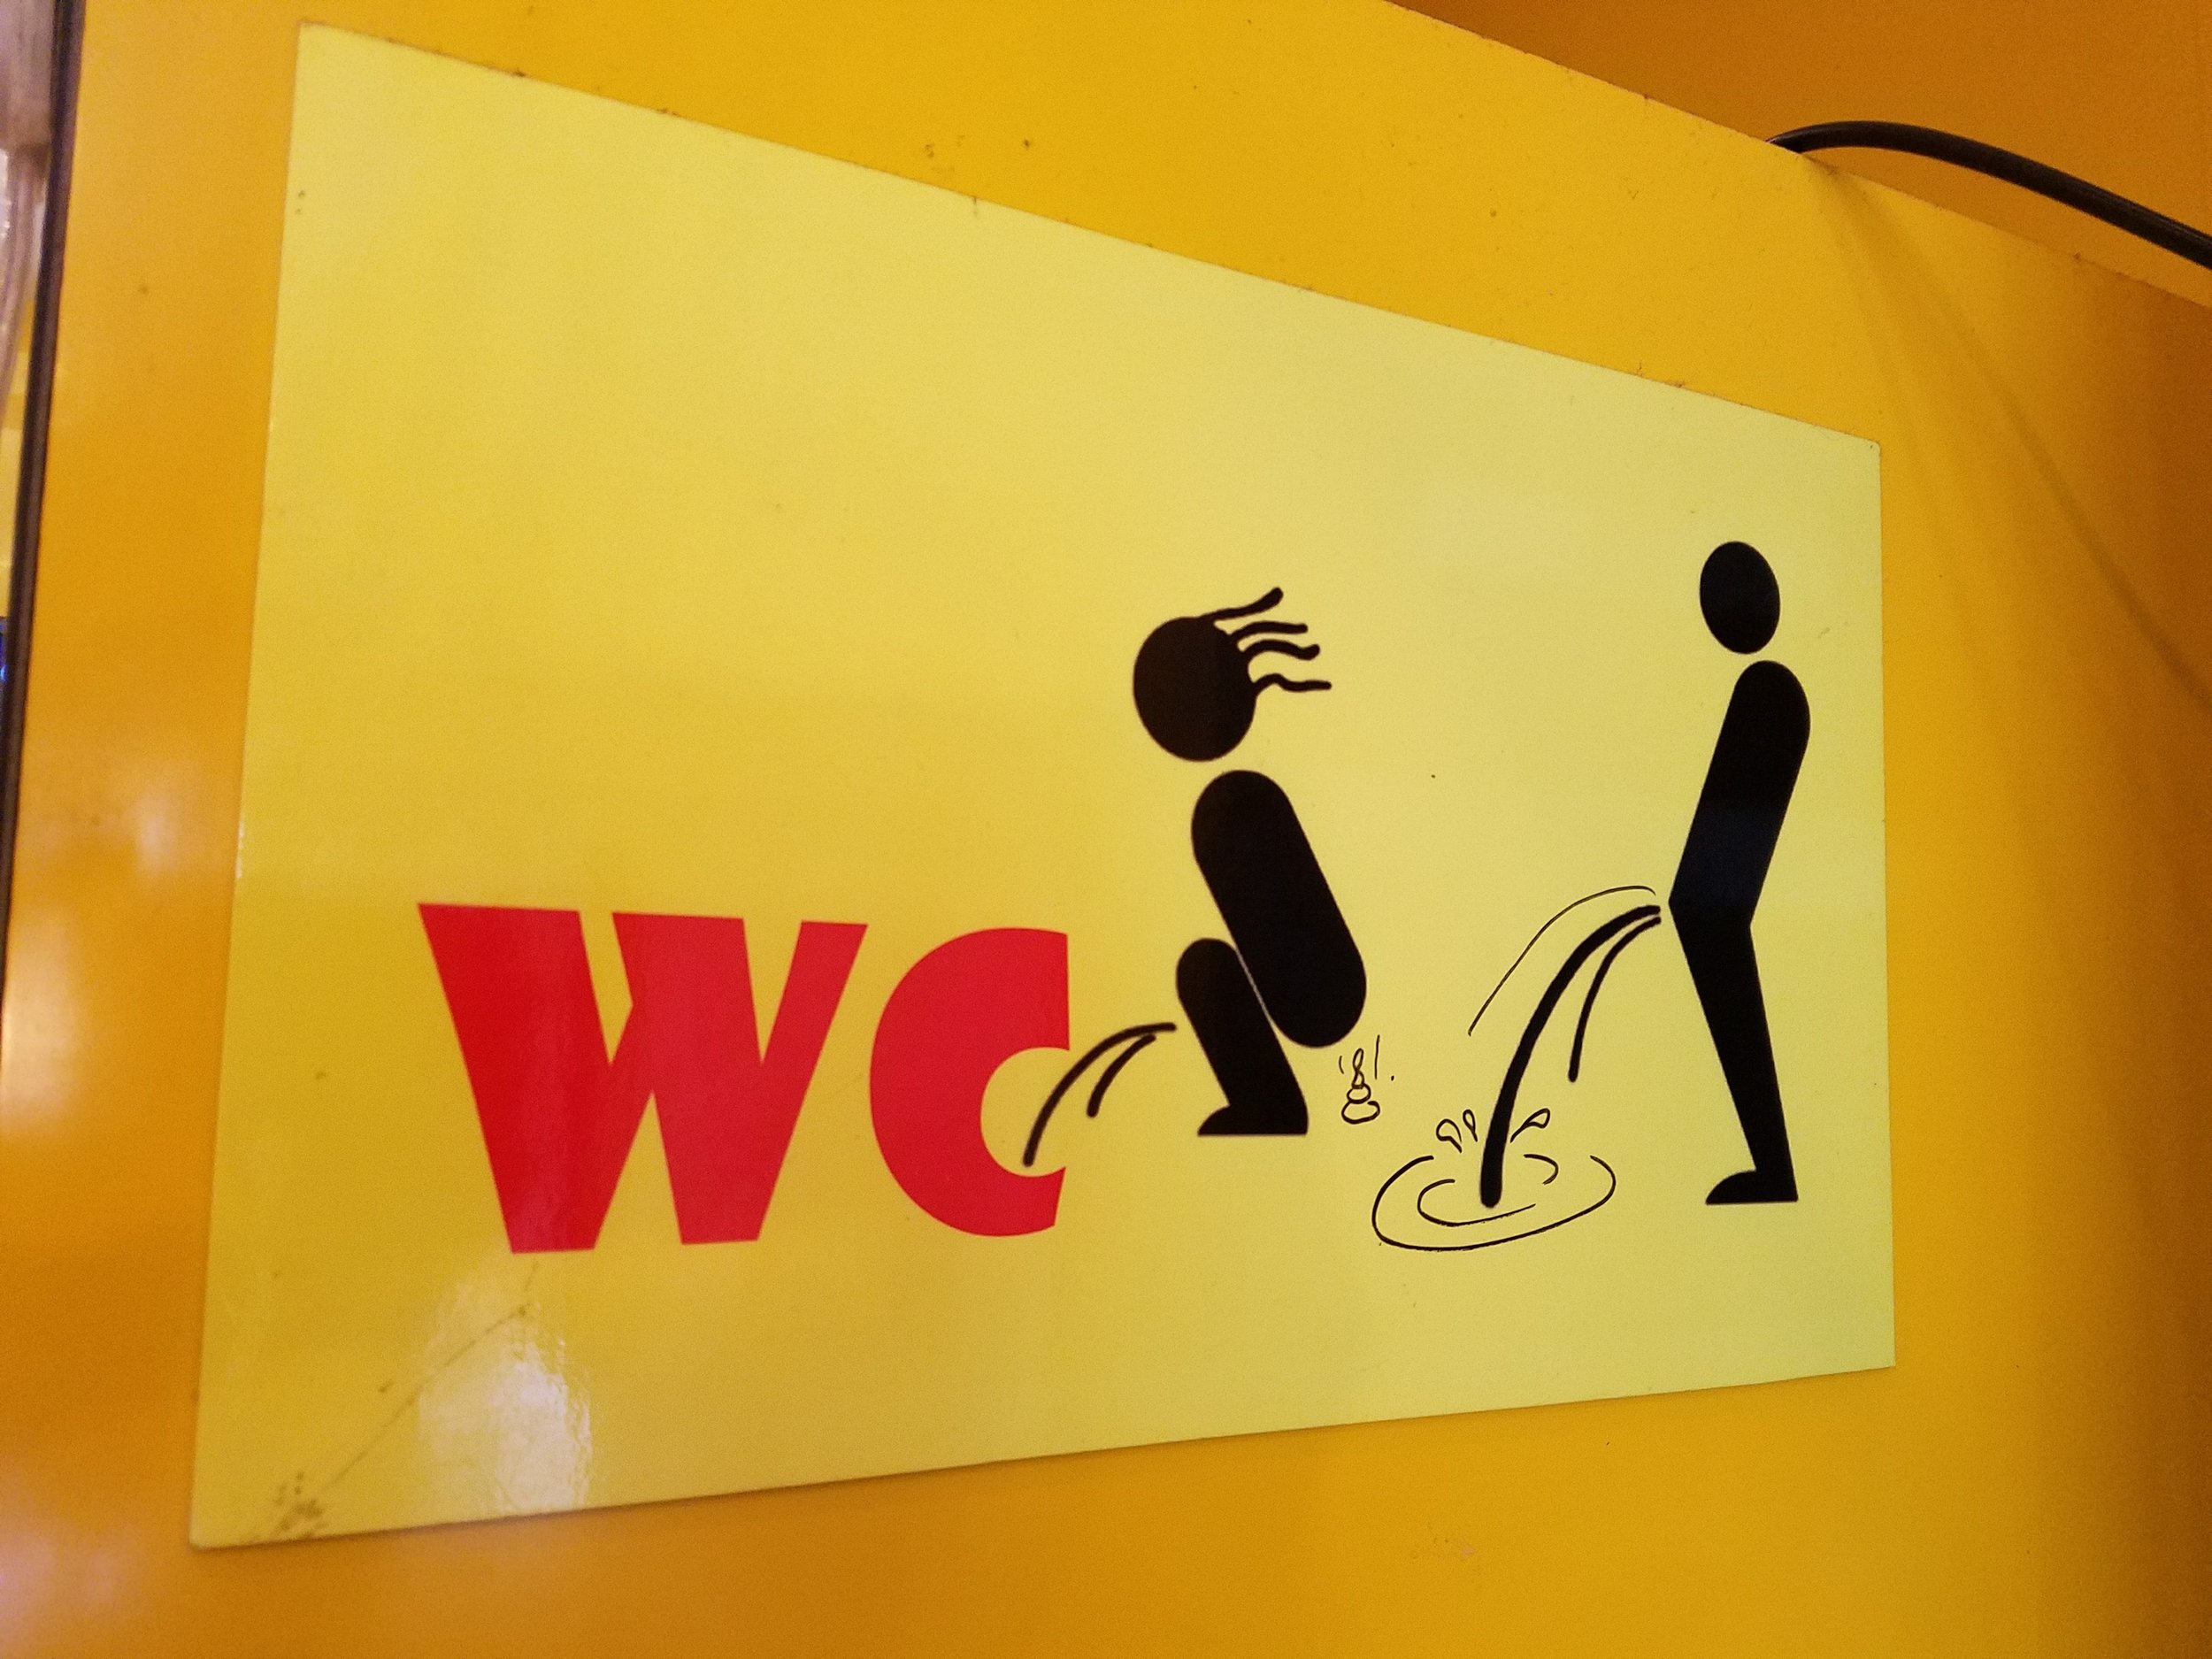   A rare unisex toilet sign in Vietnam  